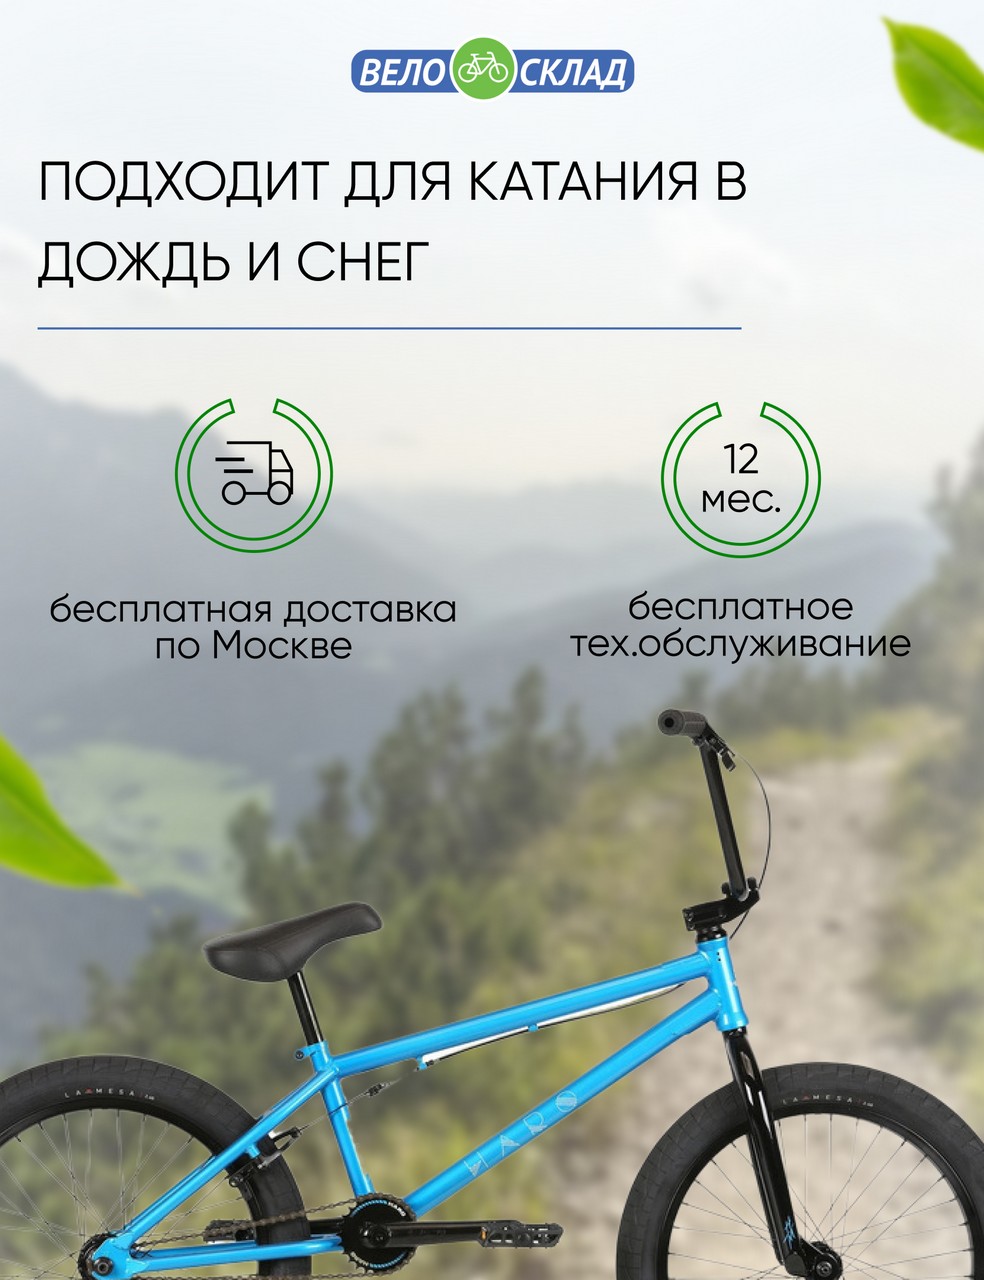 Экстремальный велосипед Haro Midway Freecoaster, год 2021, цвет Голубой, ростовка 21